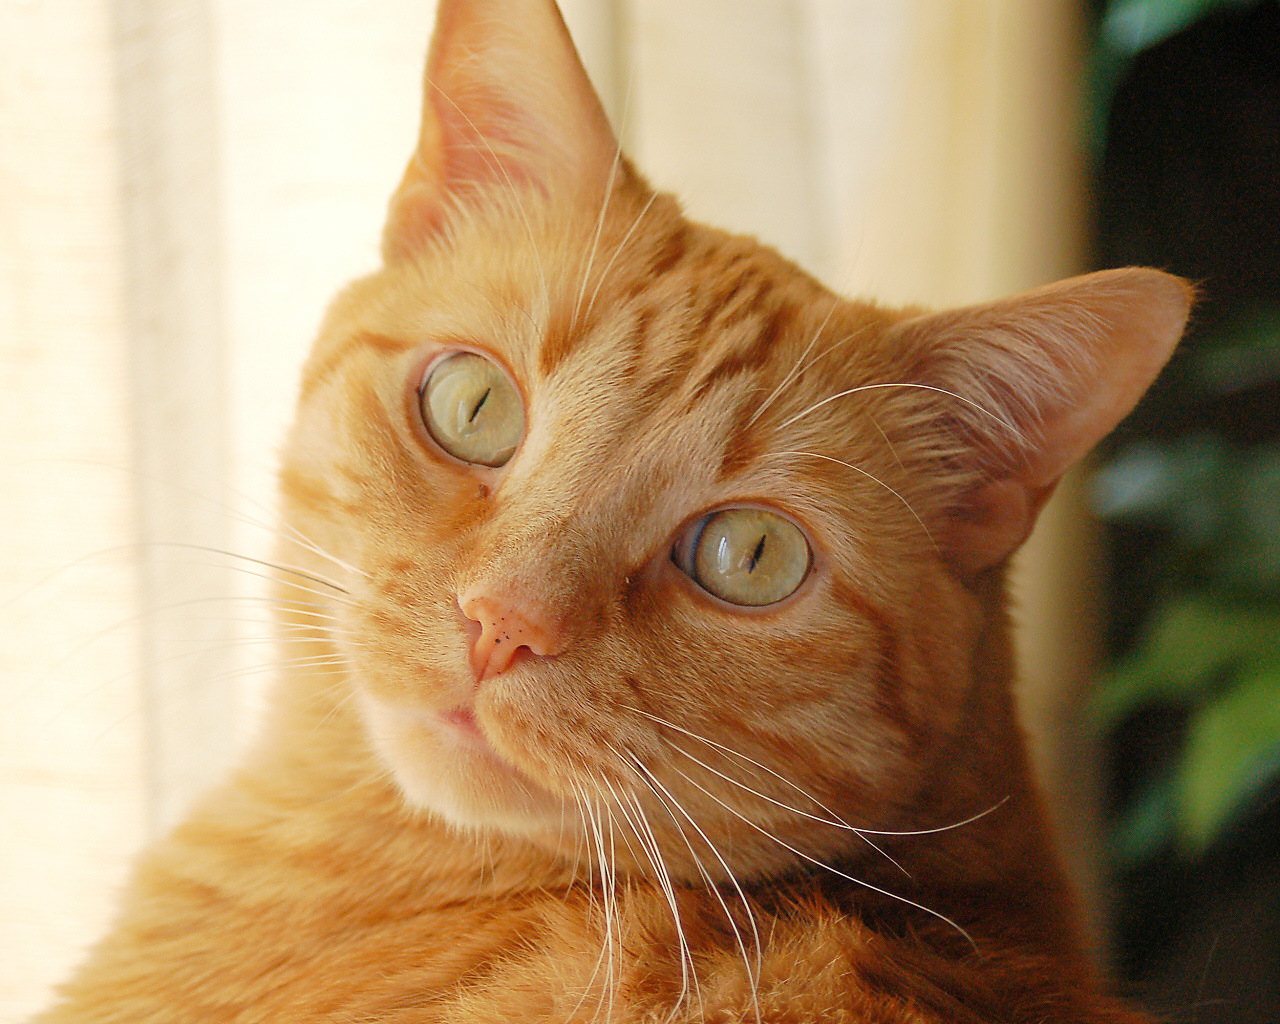 Cute orange cat free beautiful wallpaper download for your desktop or